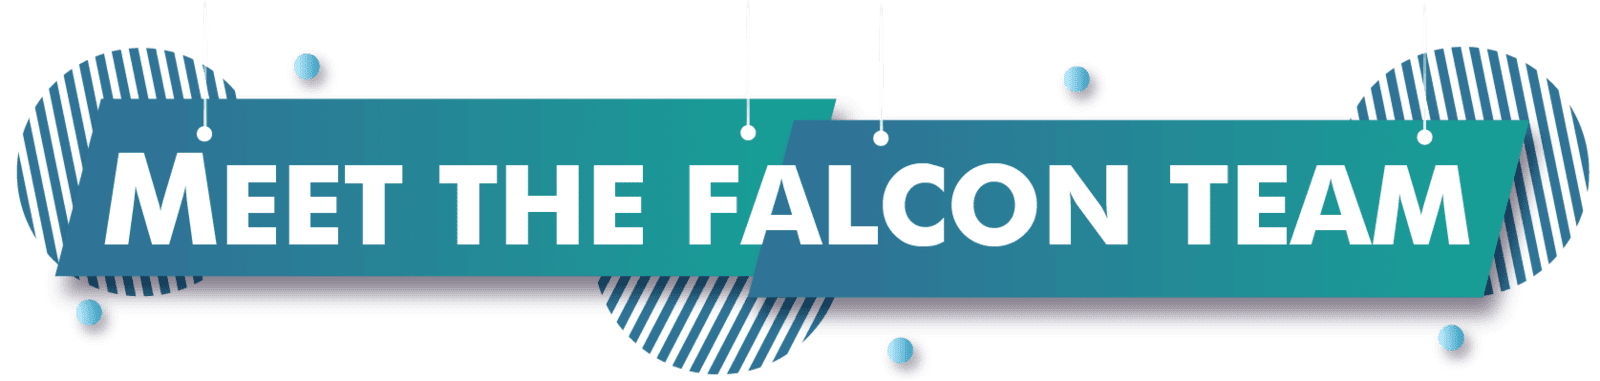 Meet The Falcon Team